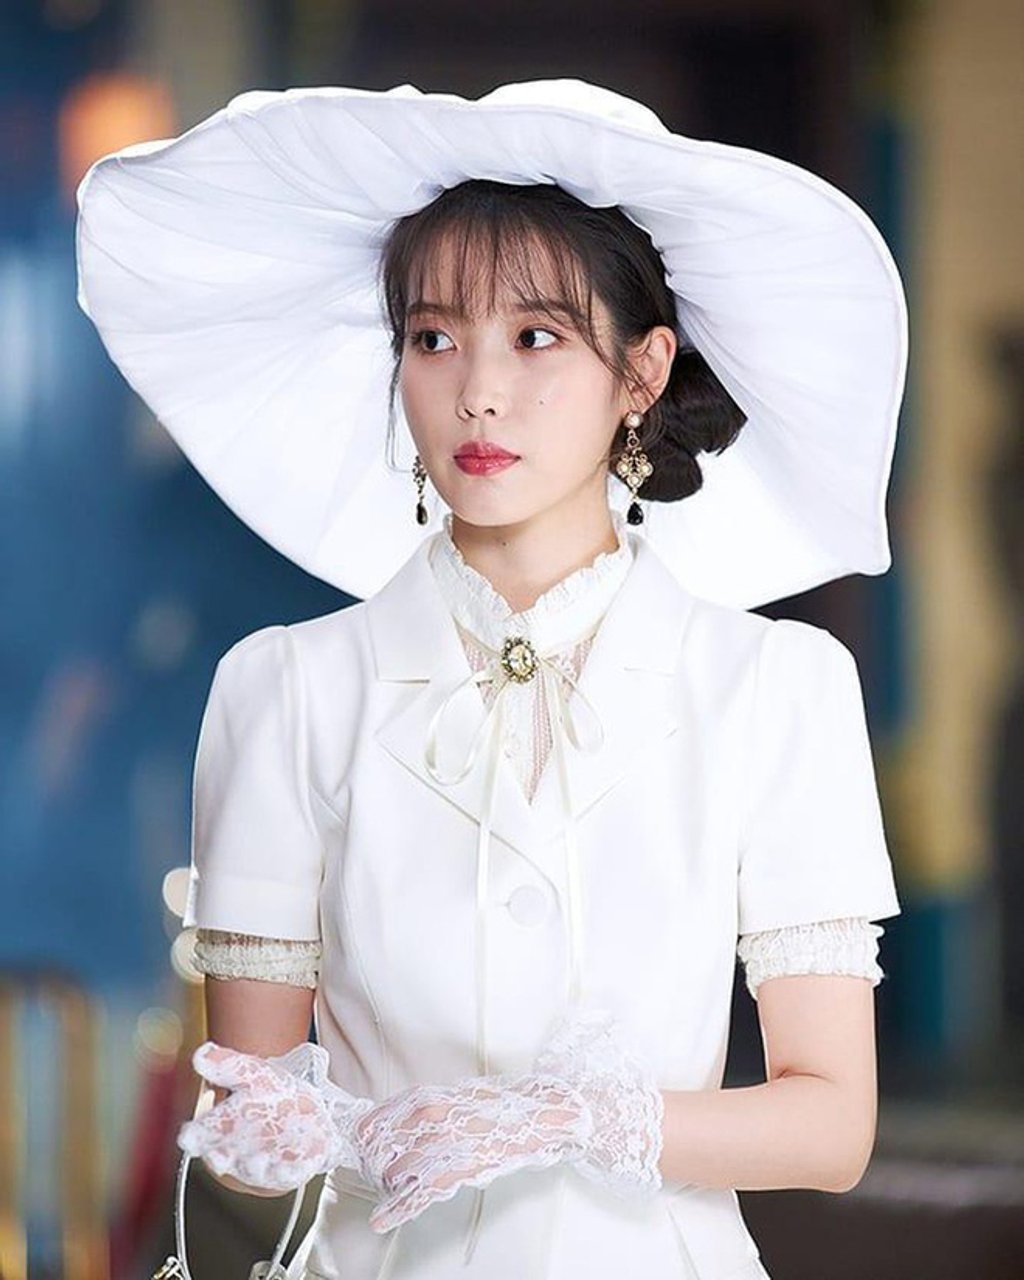 Trang phục hàng hiệu thời thượng giúp hình ảnh của Seo Ye Ji, IU trong phim thêm hoàn hảo, bắt mắt